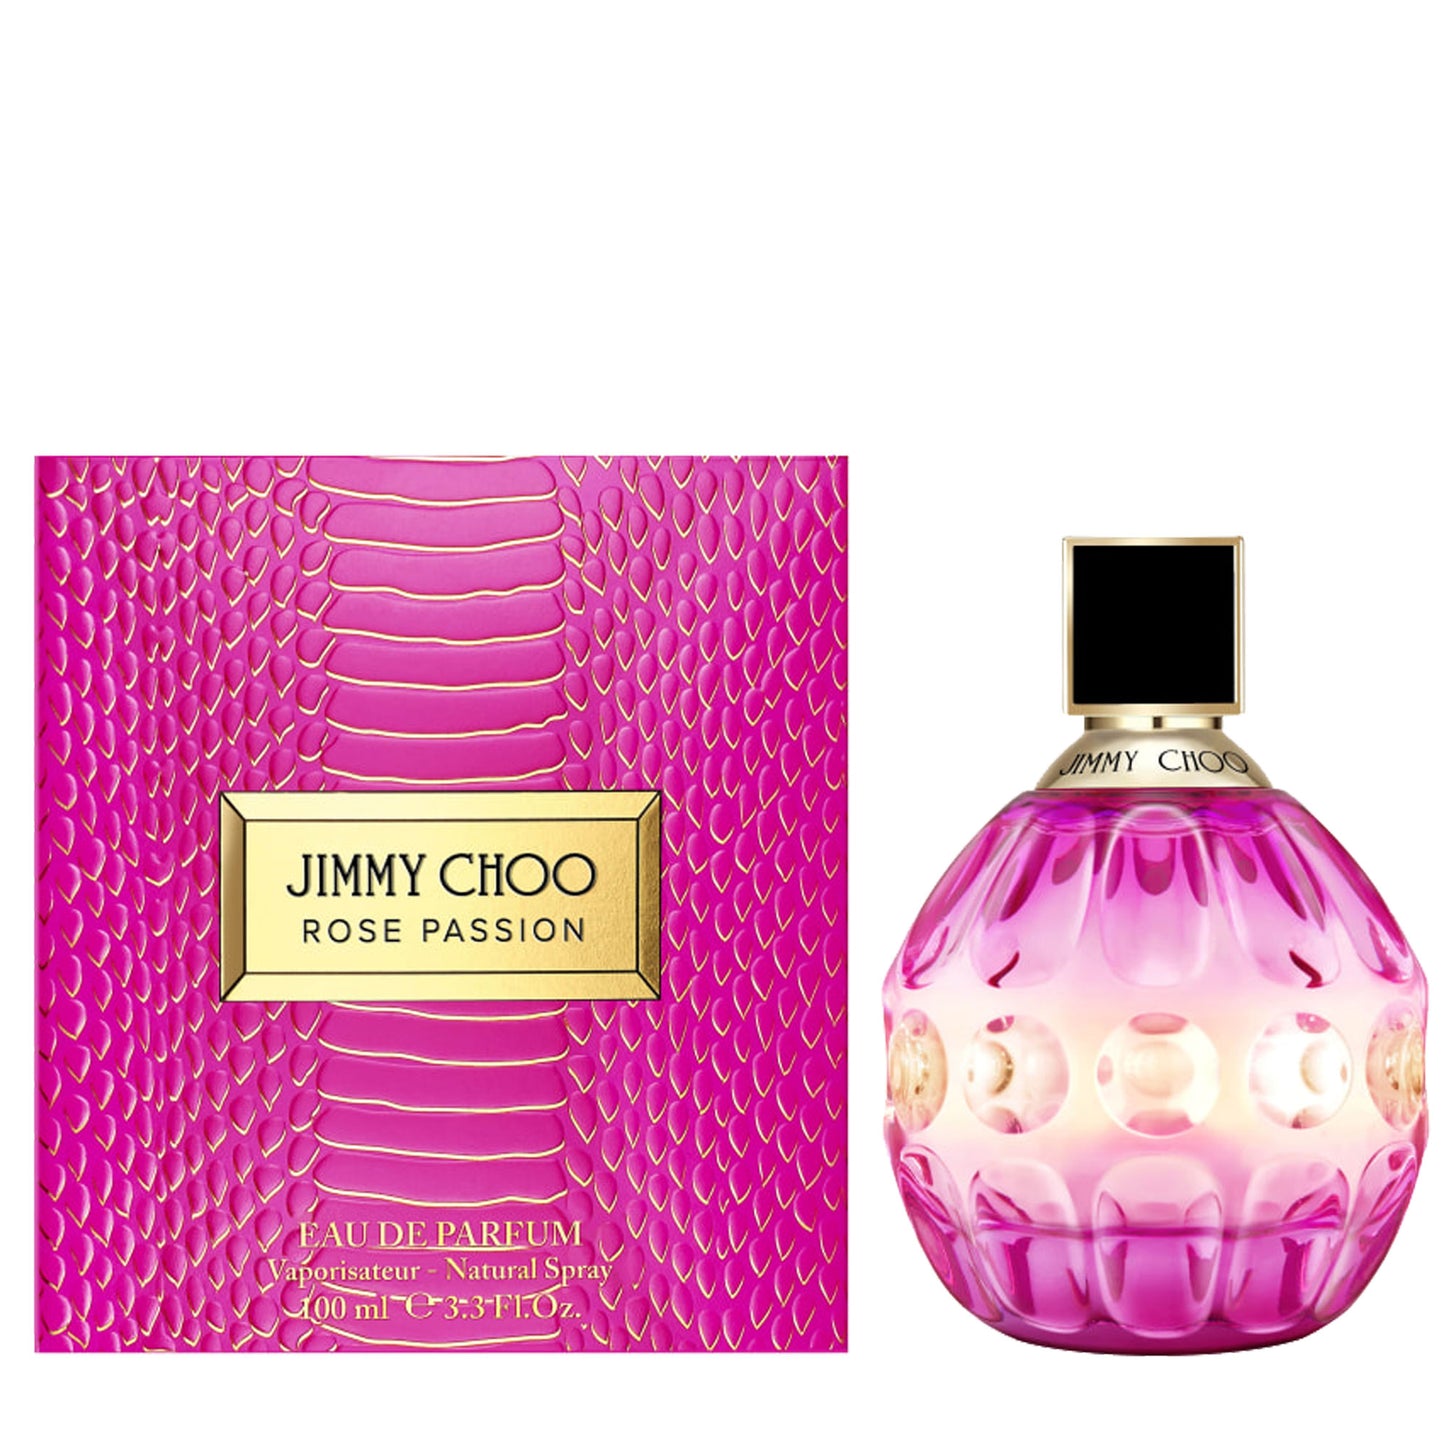 Jimmy Choo Rose Passion  Eau de Parfum